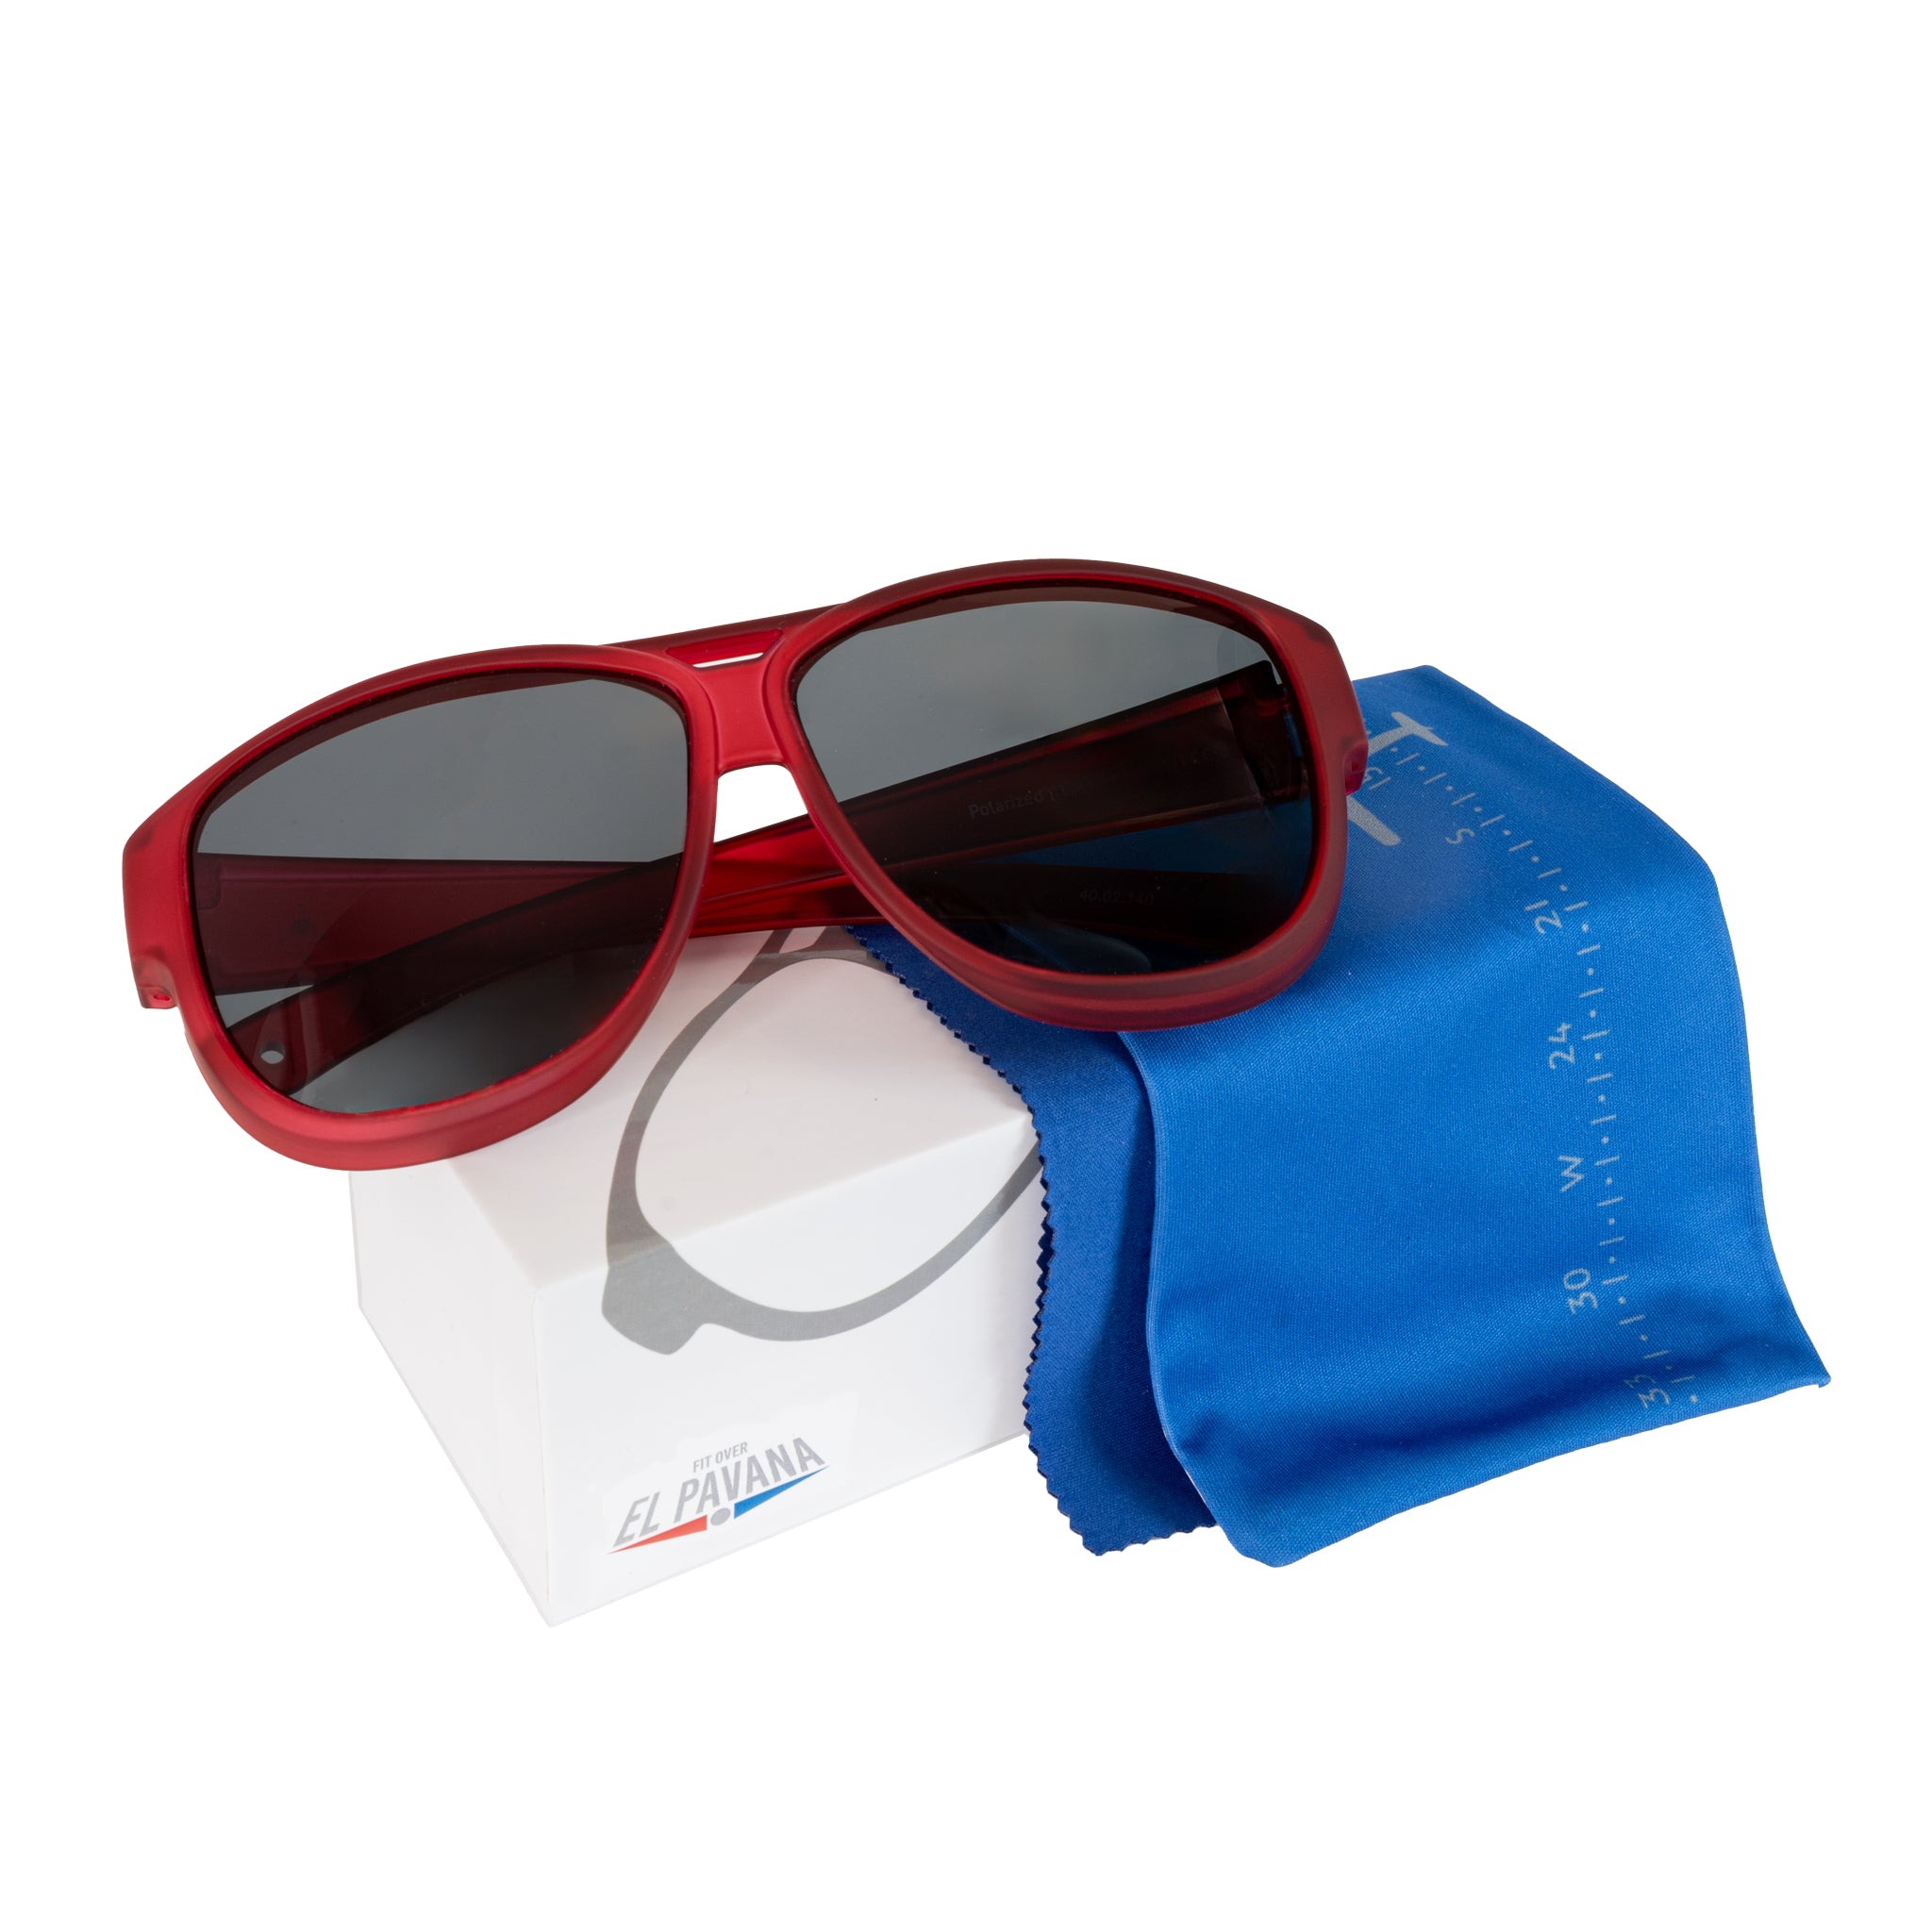 Überzieh-Sonnenbrille El Pavana, für Brillenträger , Rot